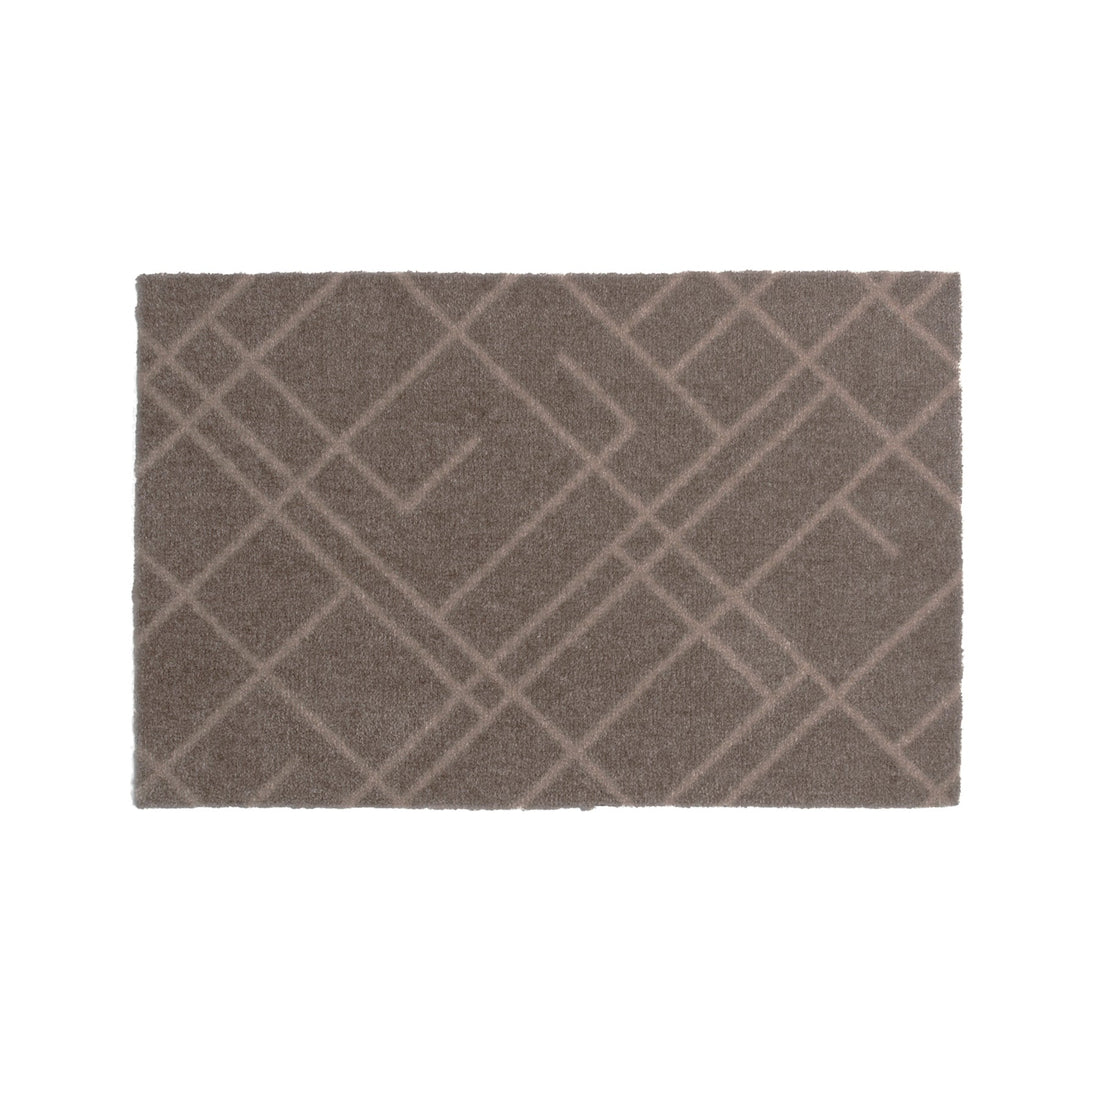 Floor mat 40 x 60 cm - lines/sand